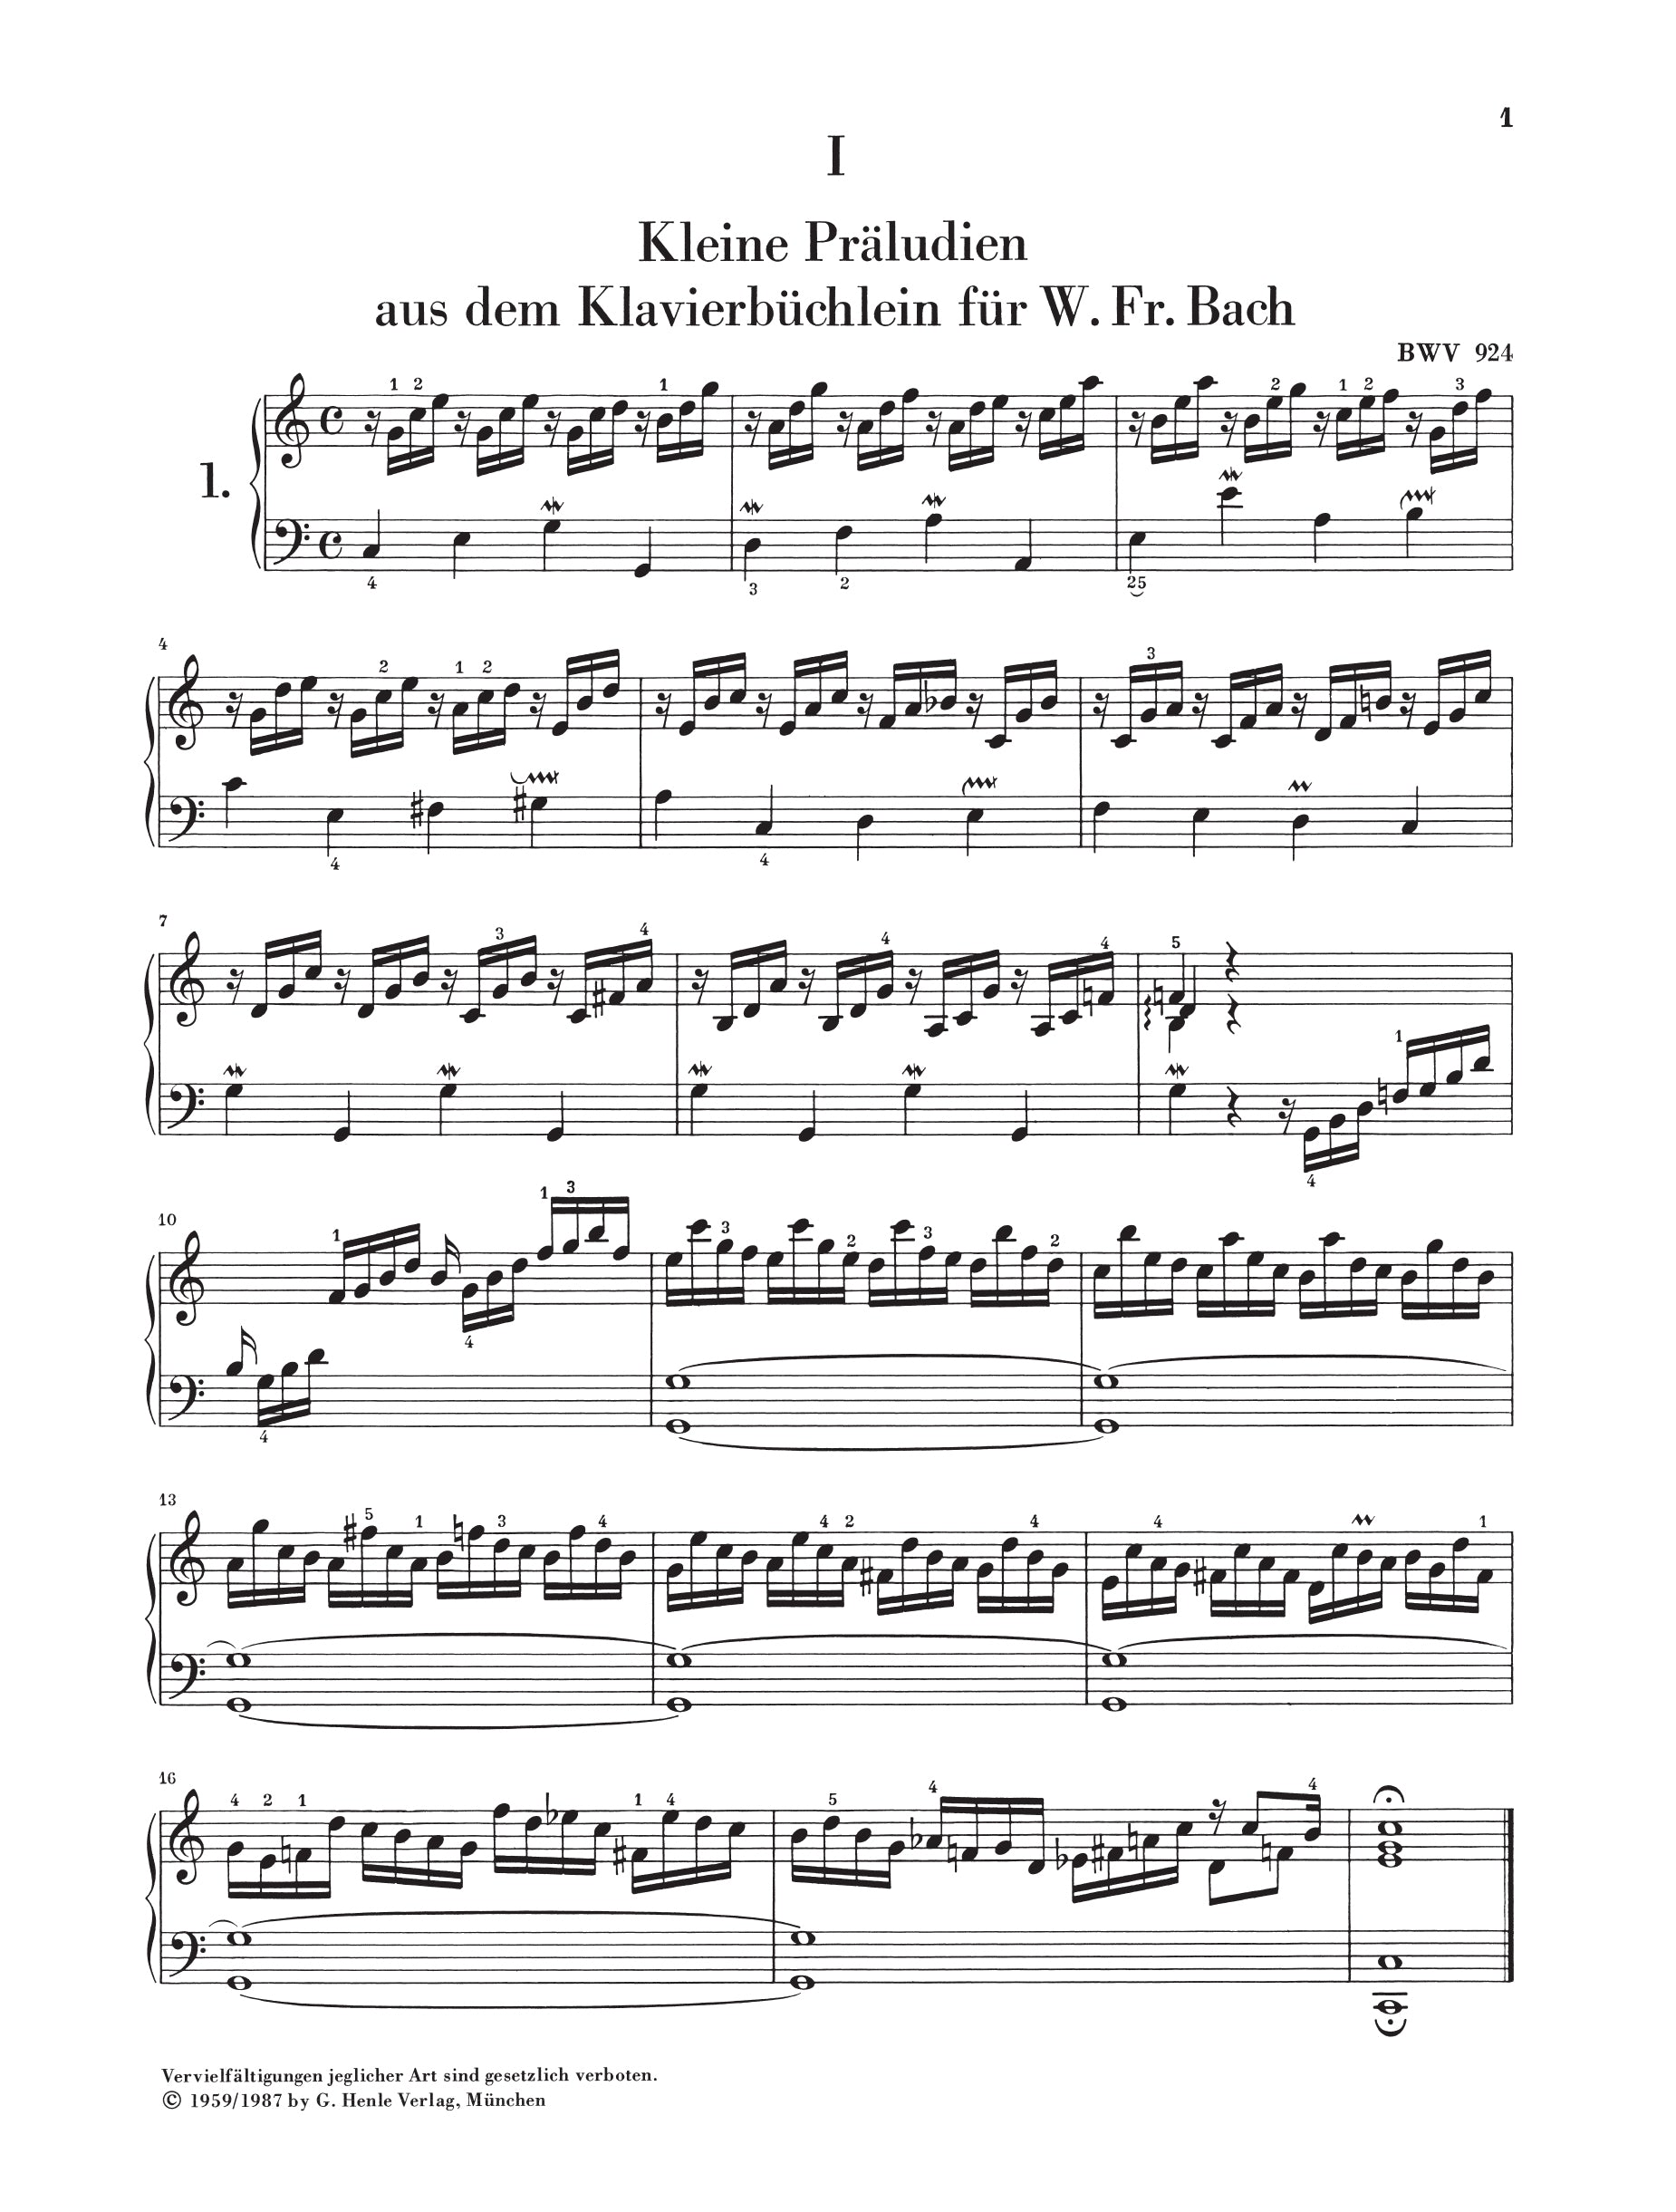 Bach: Little Preludes & Fugues Piano Solo